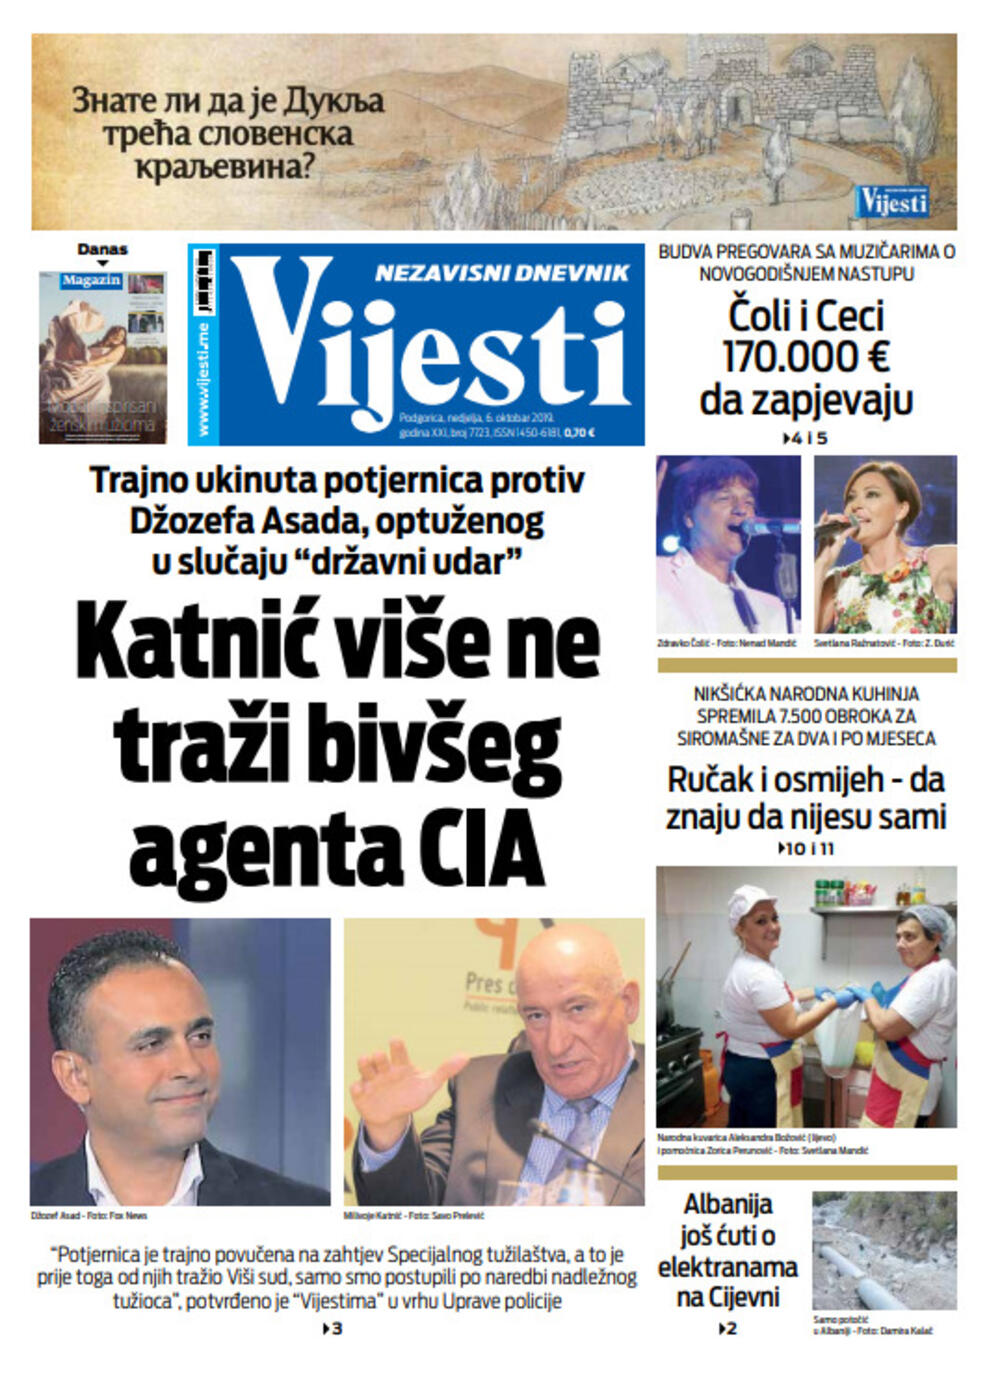 Naslovna strana "Vijesti" za 6. oktobar, Foto: Vijesti